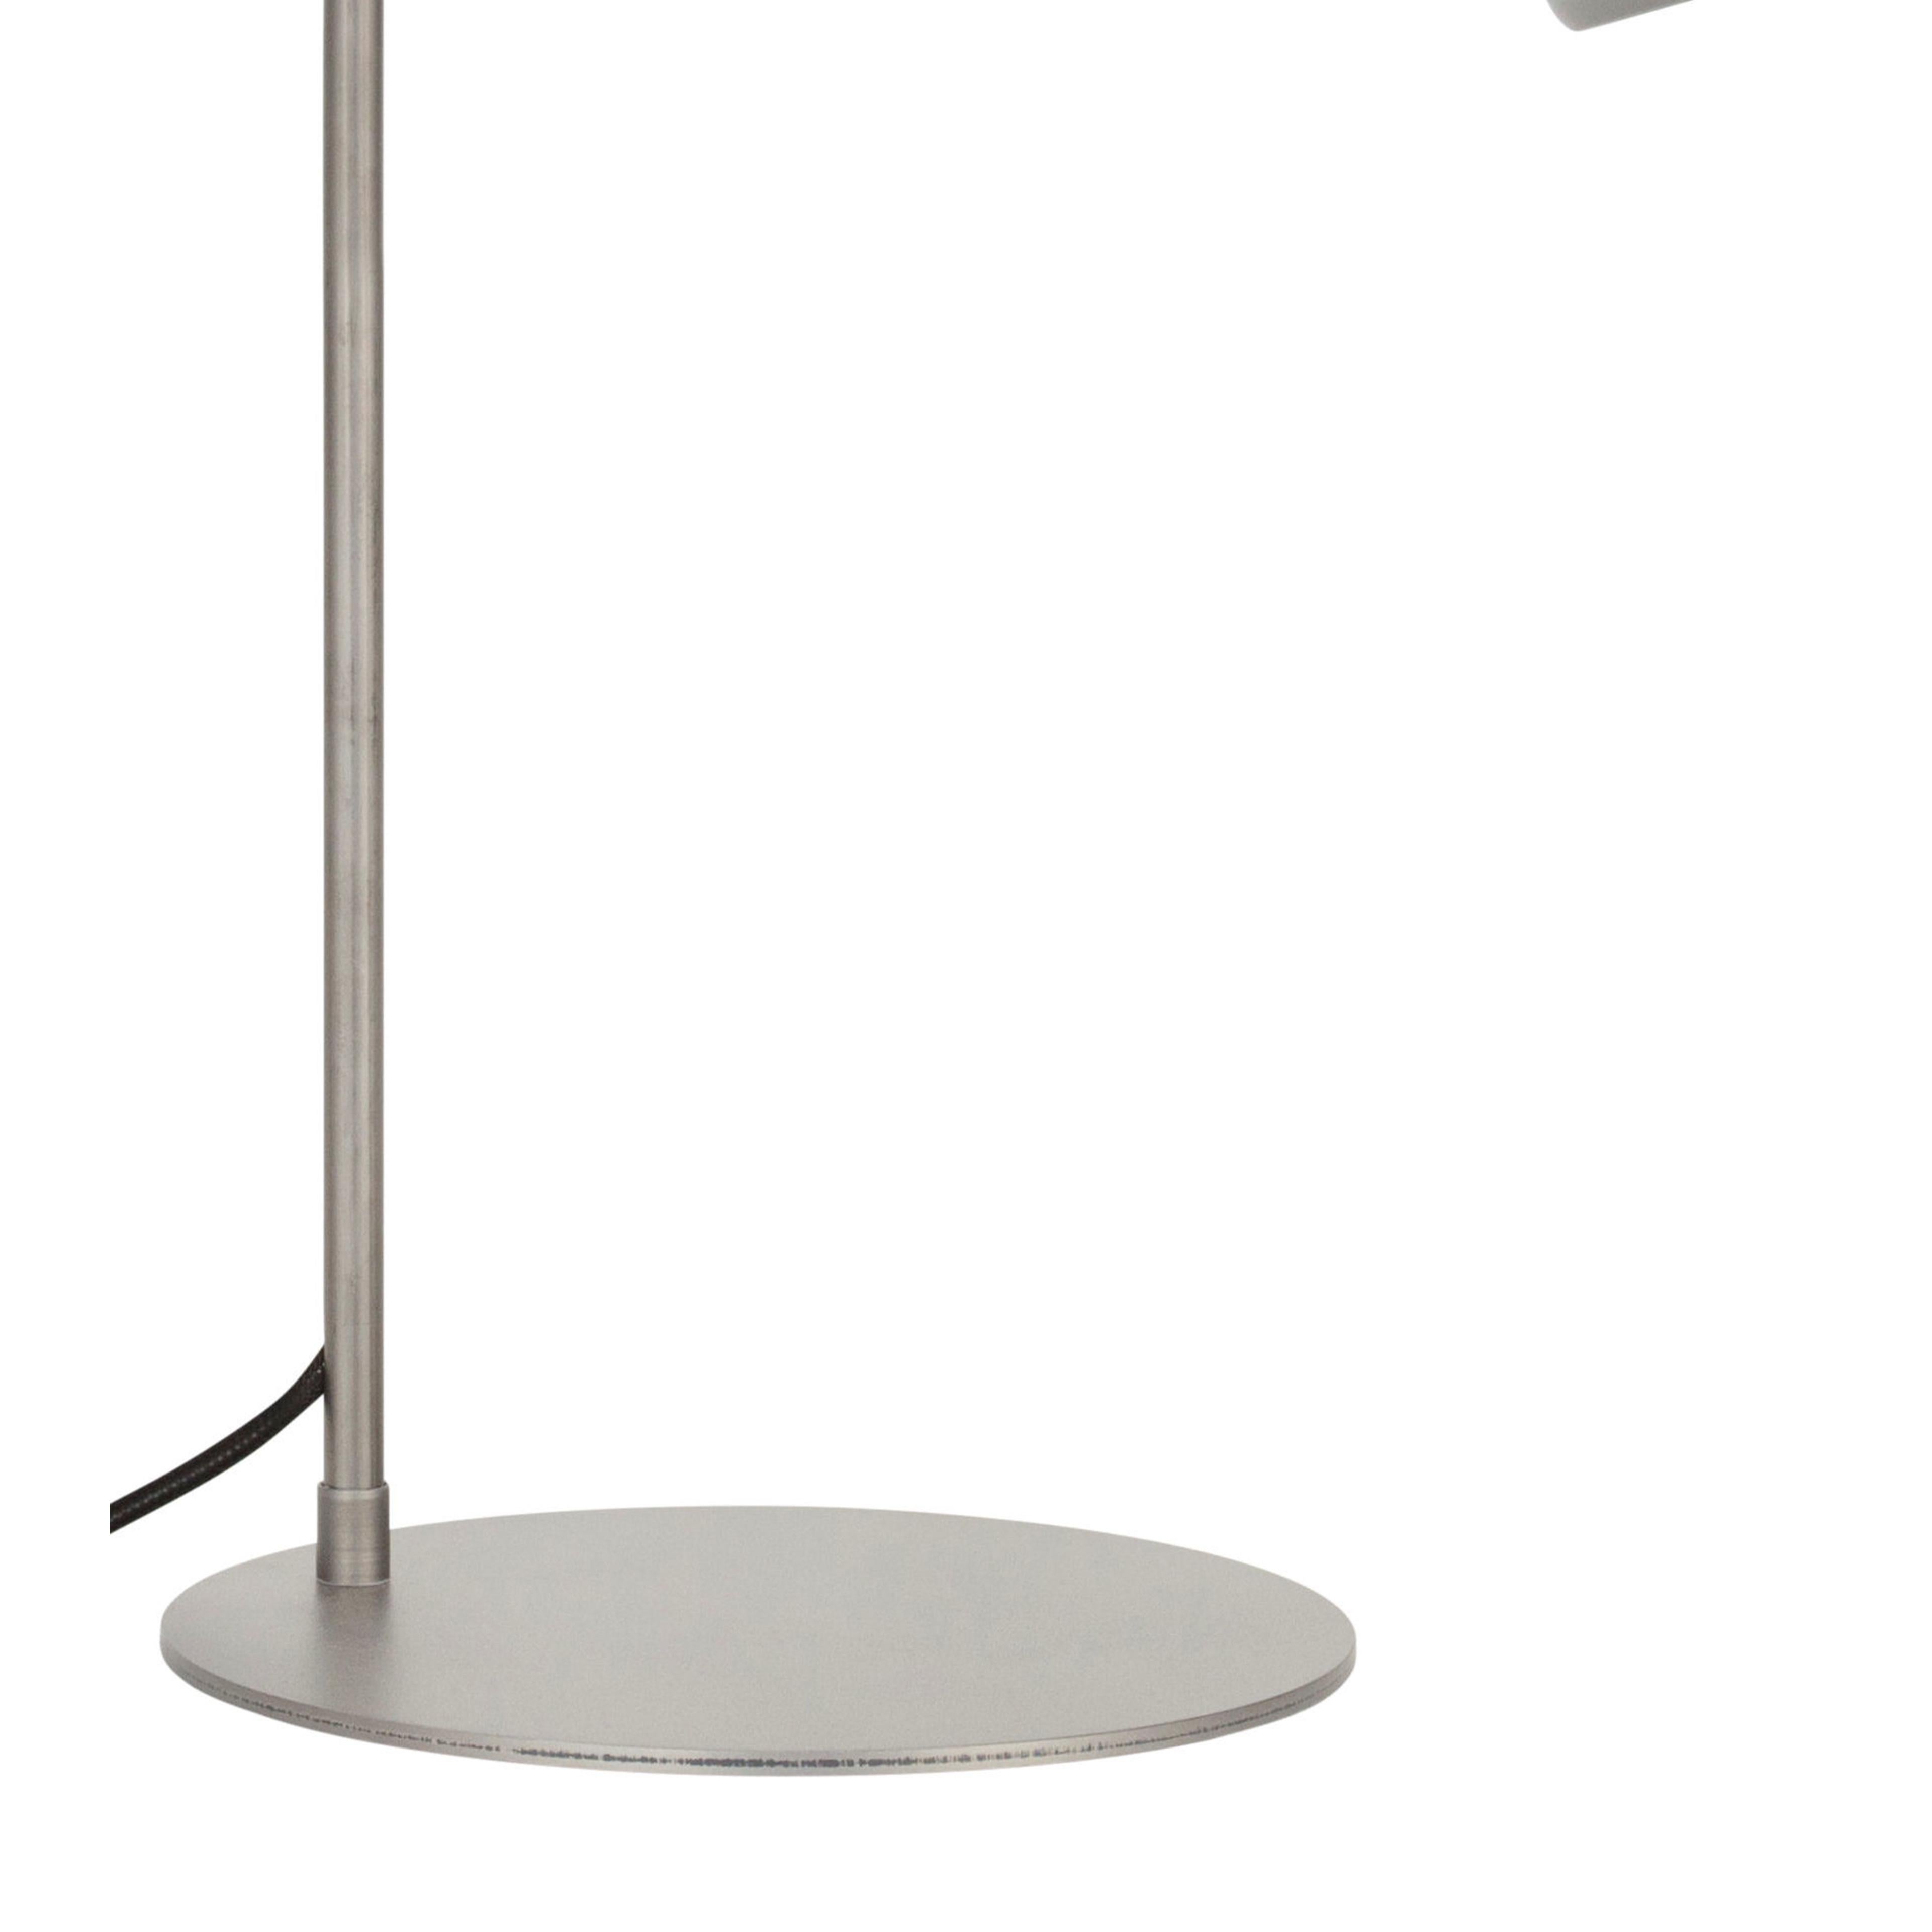 Lampe de table modèle 1430-5 Bolb conçue par Konsthantverk en 1926 et fabriquée par eux-mêmes.

La production des lampes, des appliques et des lampadaires est réalisée de manière artisanale avec les mêmes matériaux et techniques que les premiers